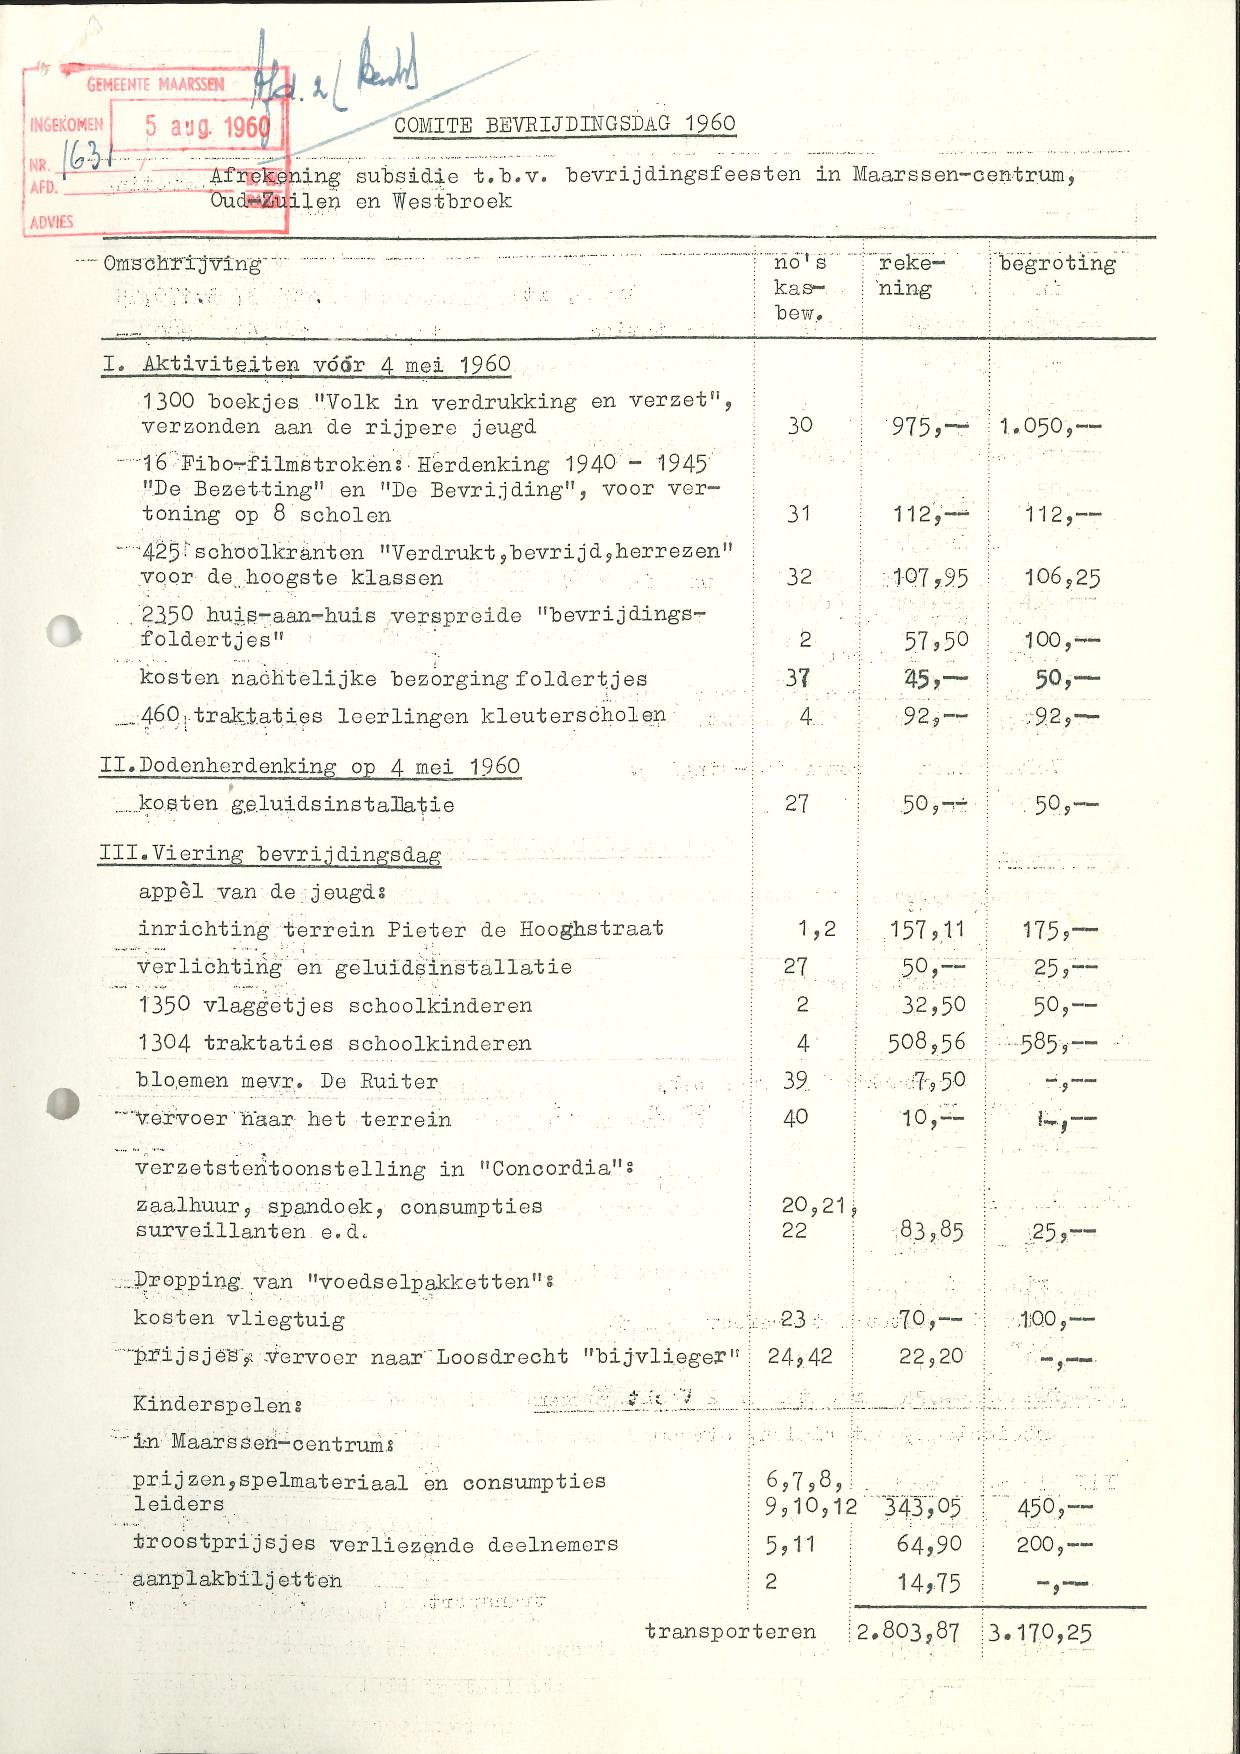 Rekening-bevrijdingscomit-1960